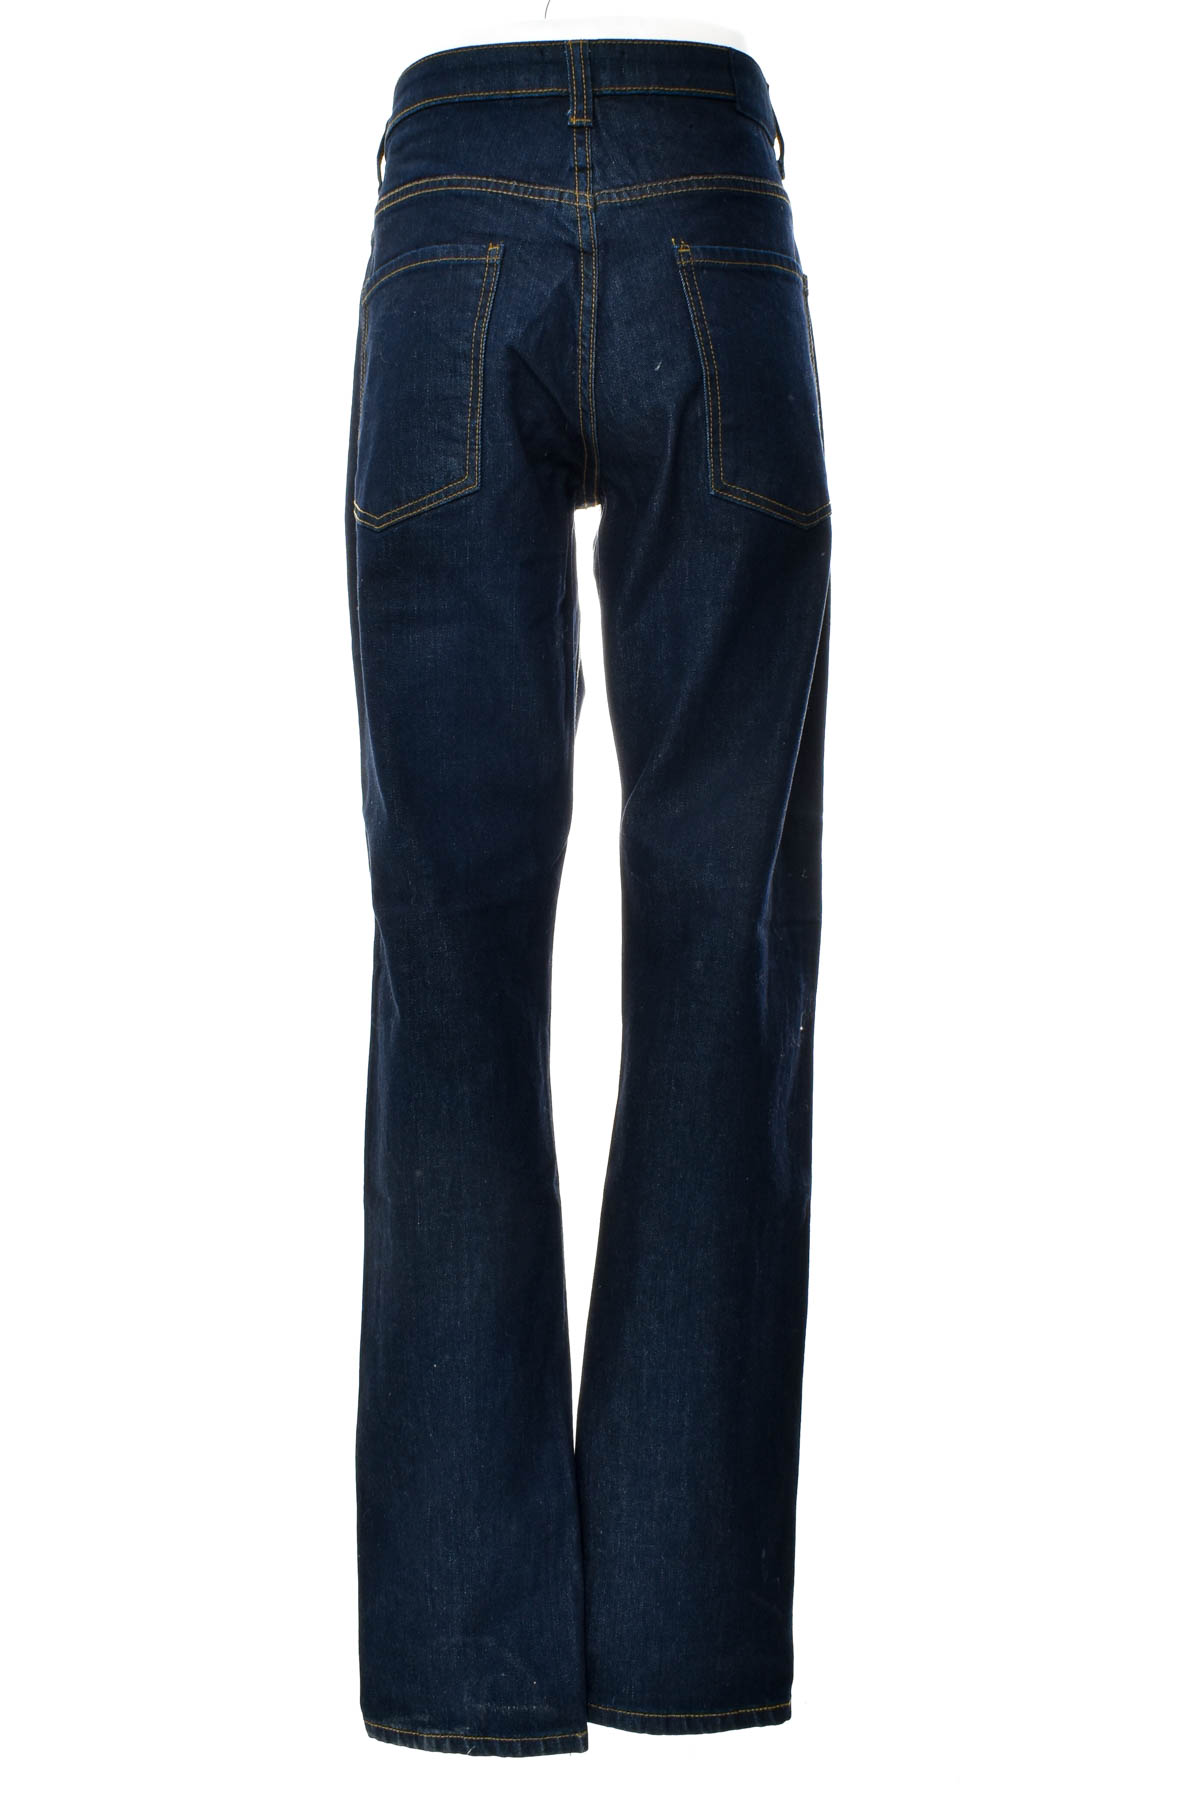 Men's jeans - OTTO - 1